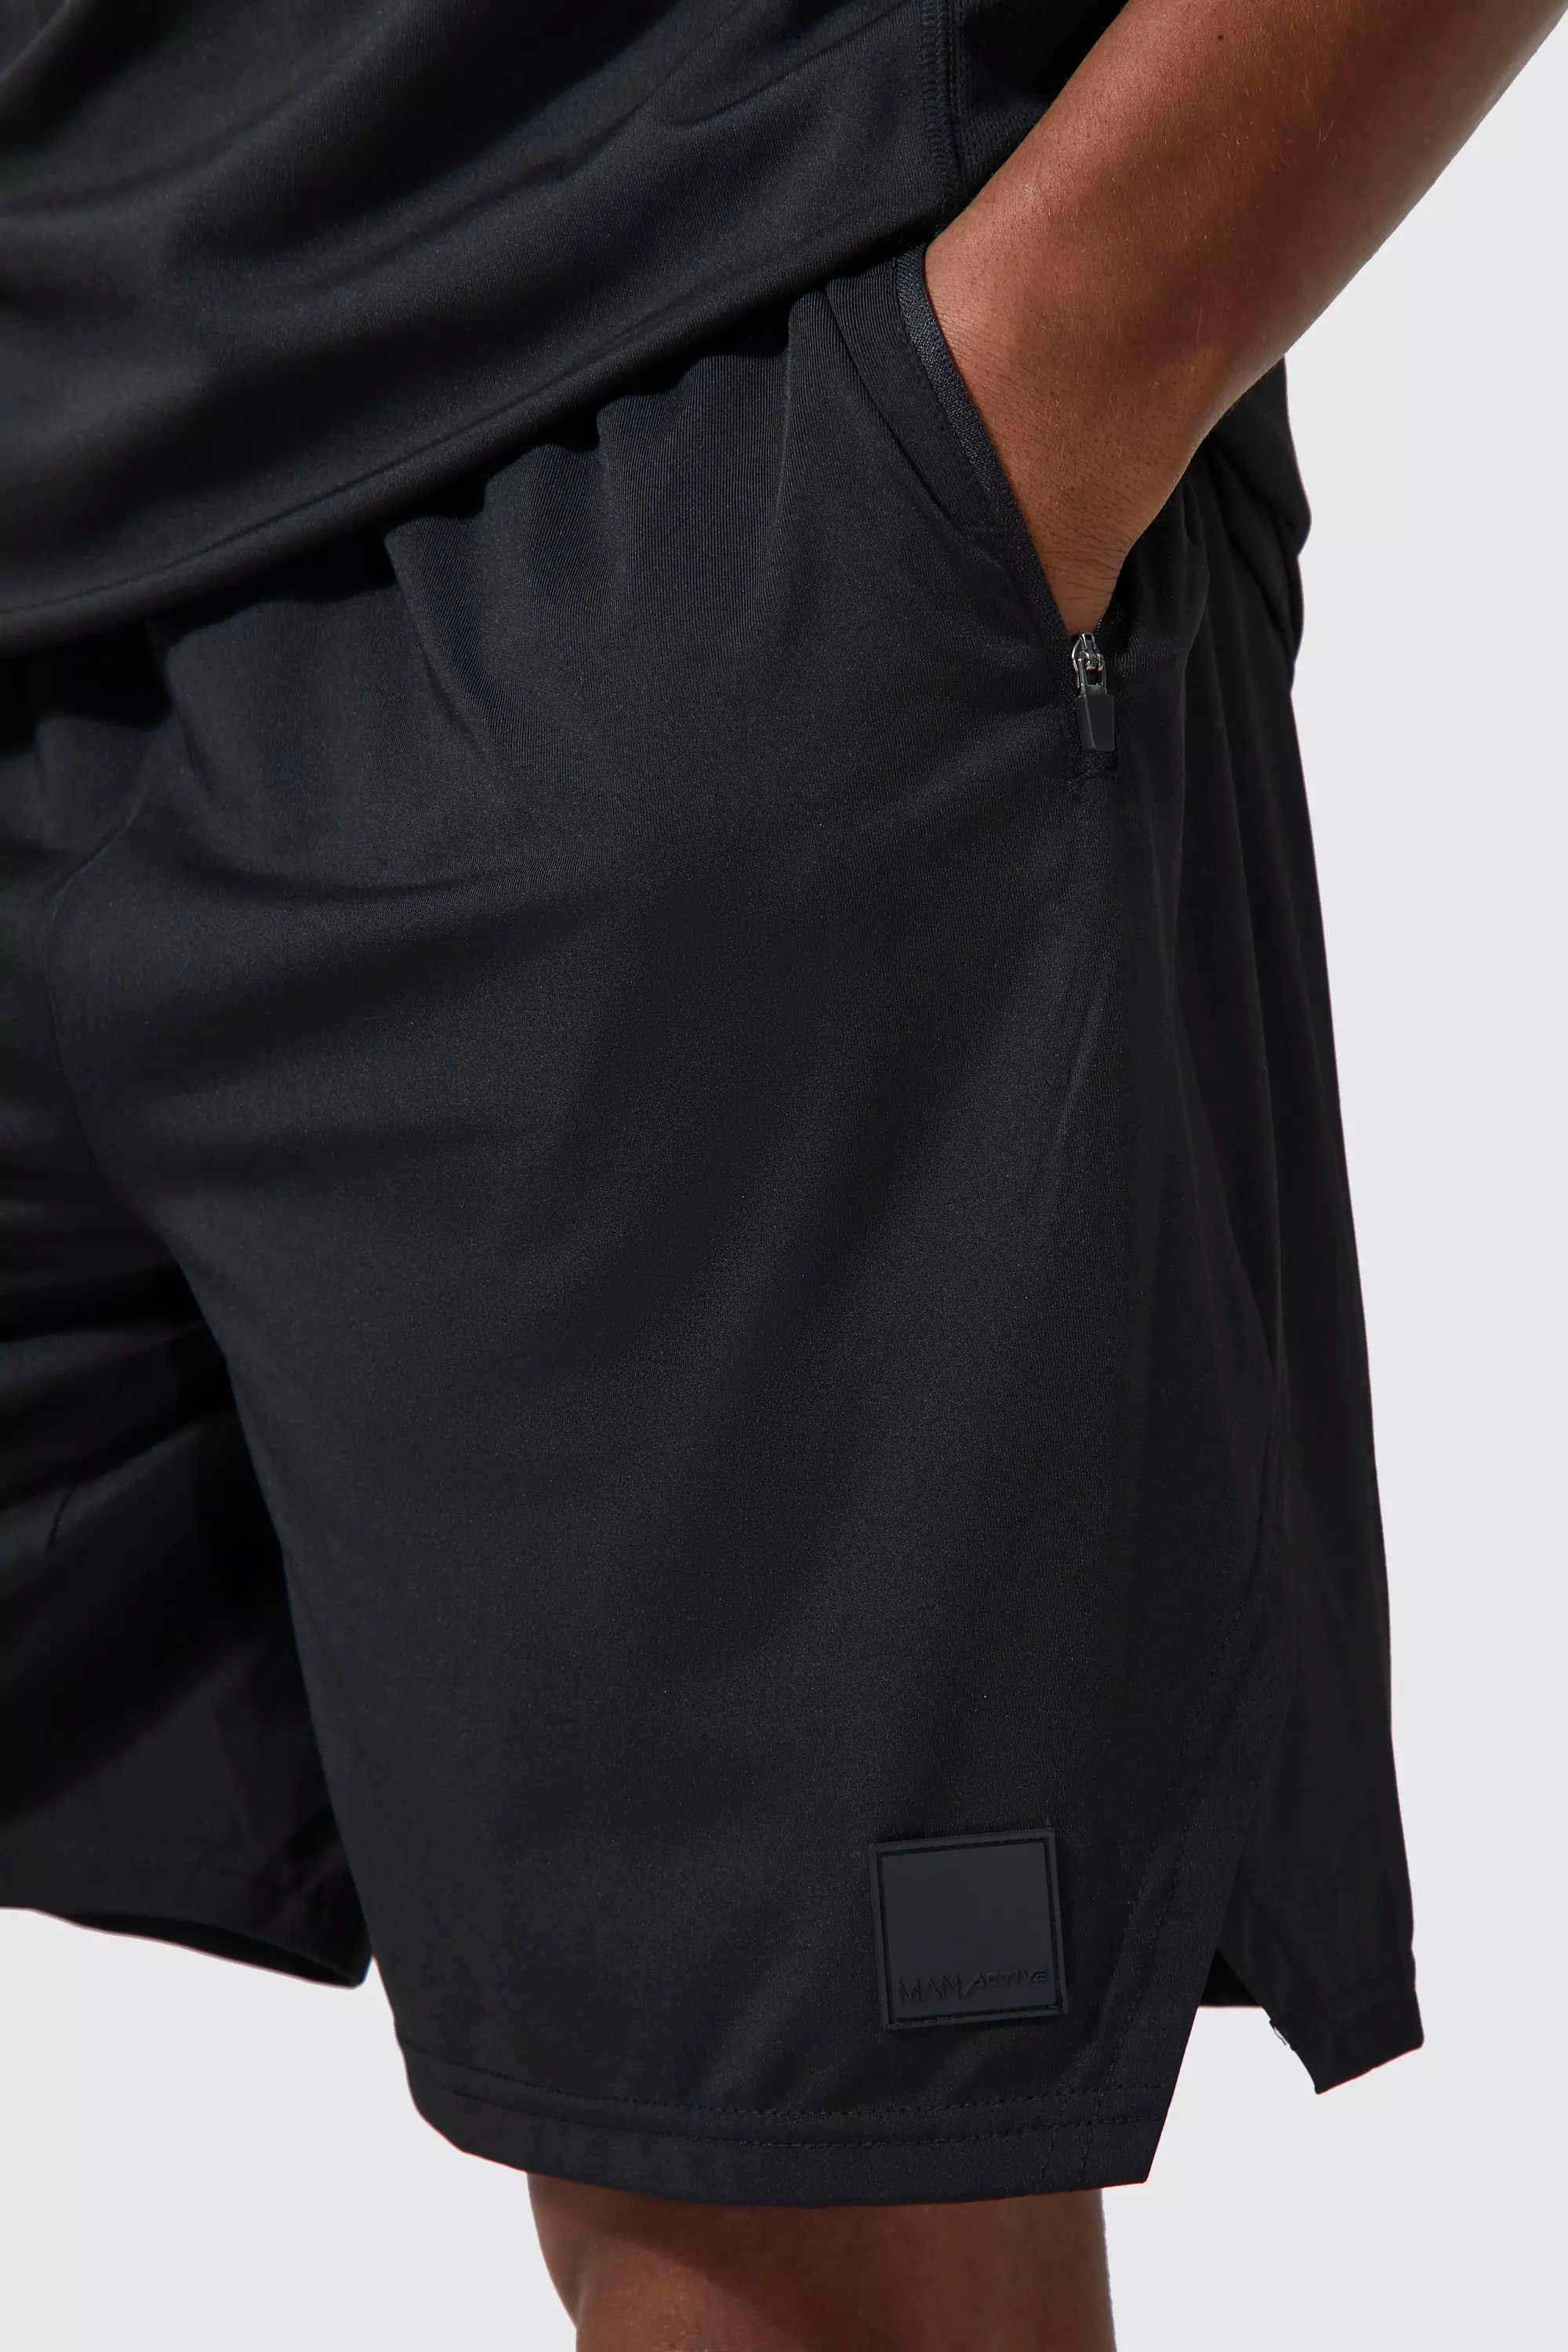 boohooMAN Pack de 2 Pantalones cortos Man Active deportivos con cremallera en los bolsillos - Variado - Talla XL